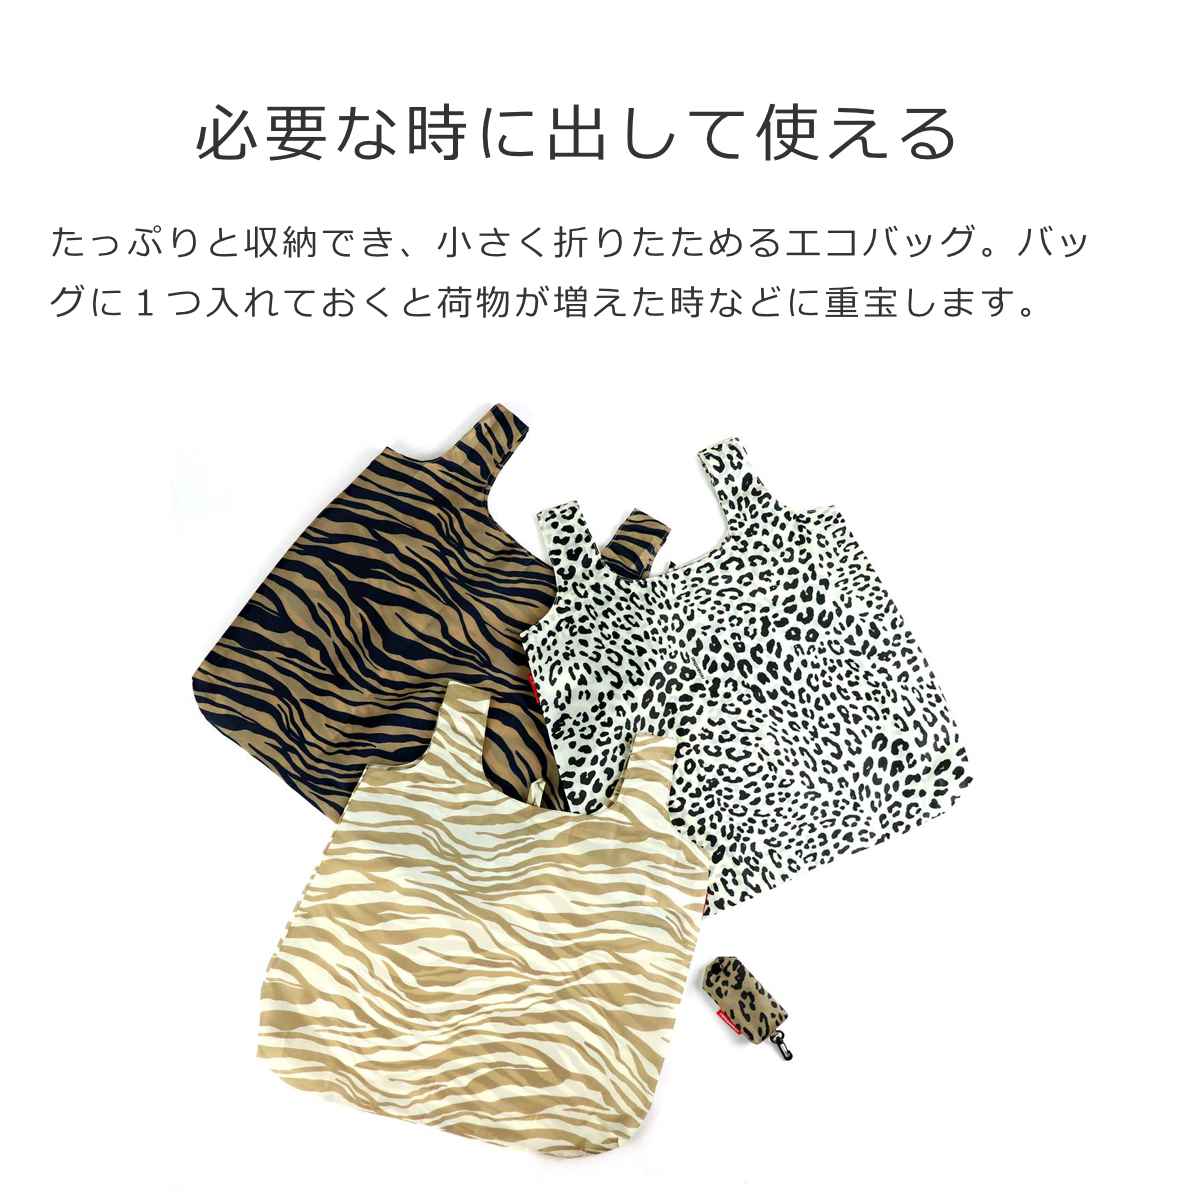 ミニマキシ ショッパー ポケット アニマル (MINI MAXI SHOPPER POCKET ANIMAL)